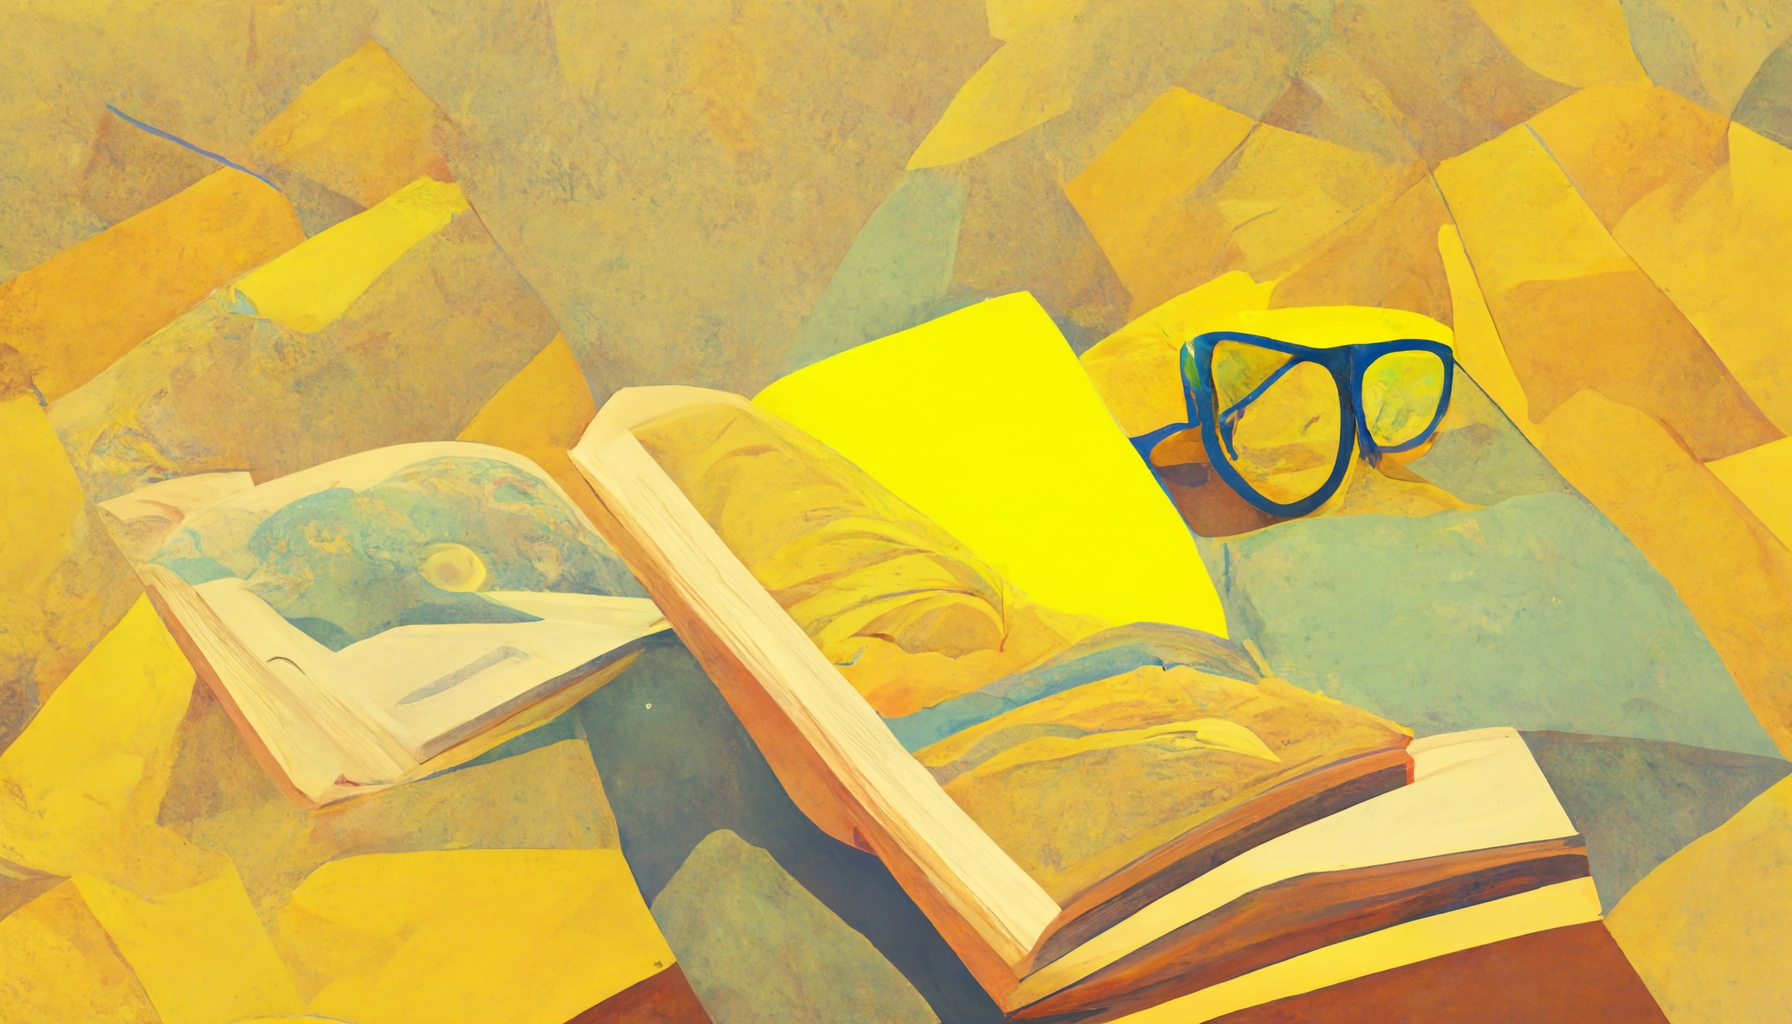 Warum ist lesen wichtig, abstraktes Bild von einem gelben Buch und einer Brille